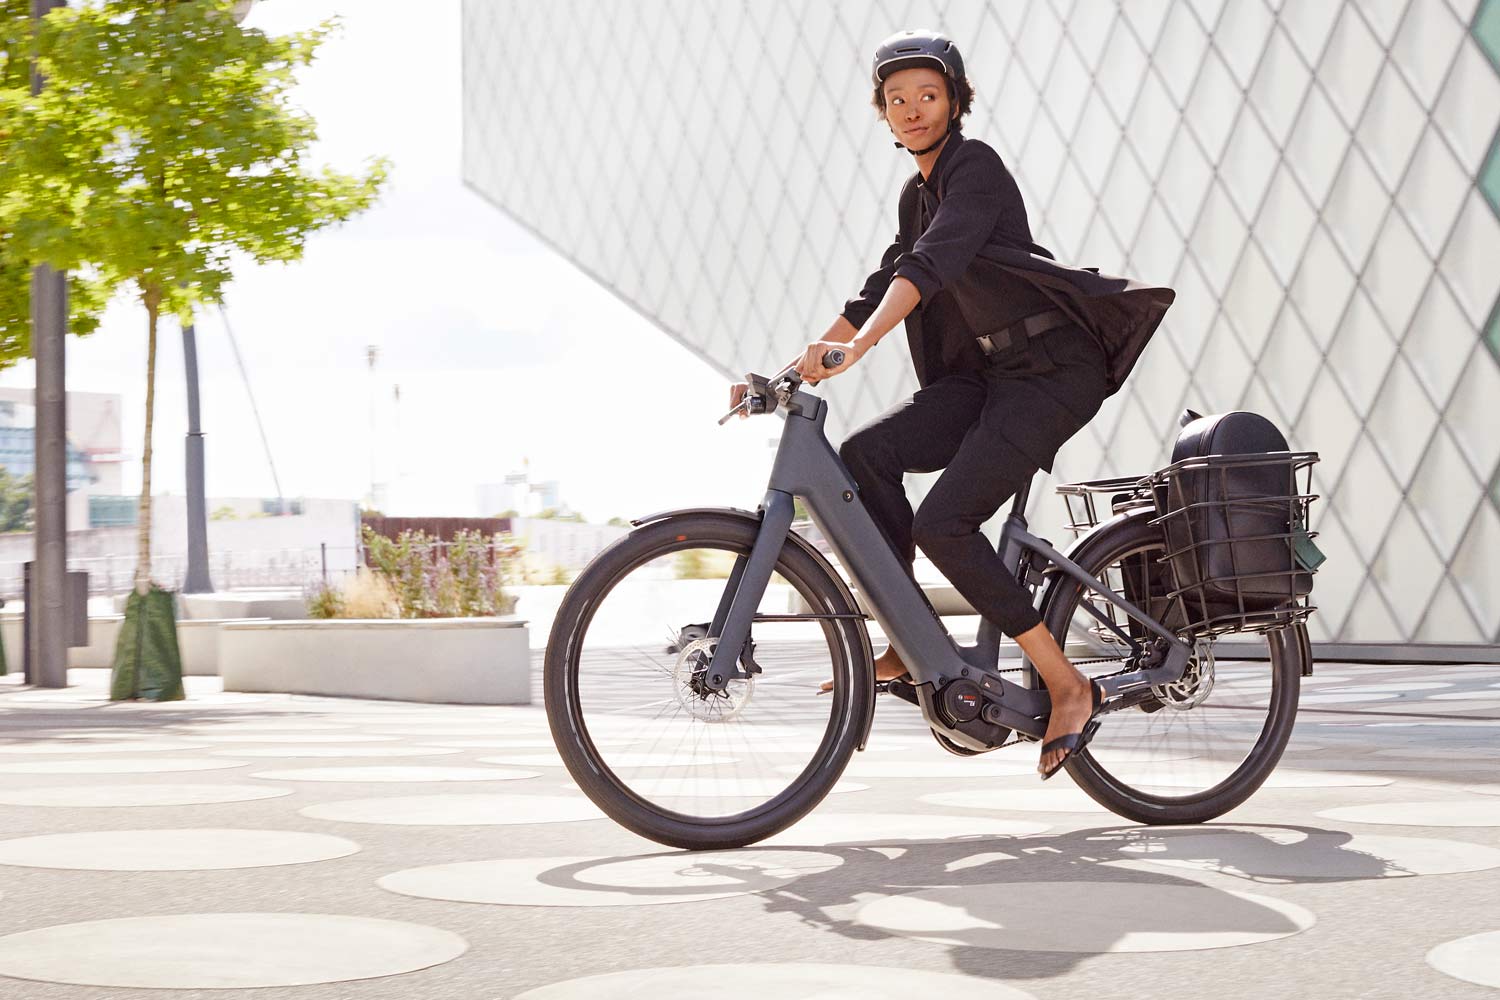 Canyon Future Mobility Concept, Urban Mobility city e-bikes you can buy, Precede: ON riding